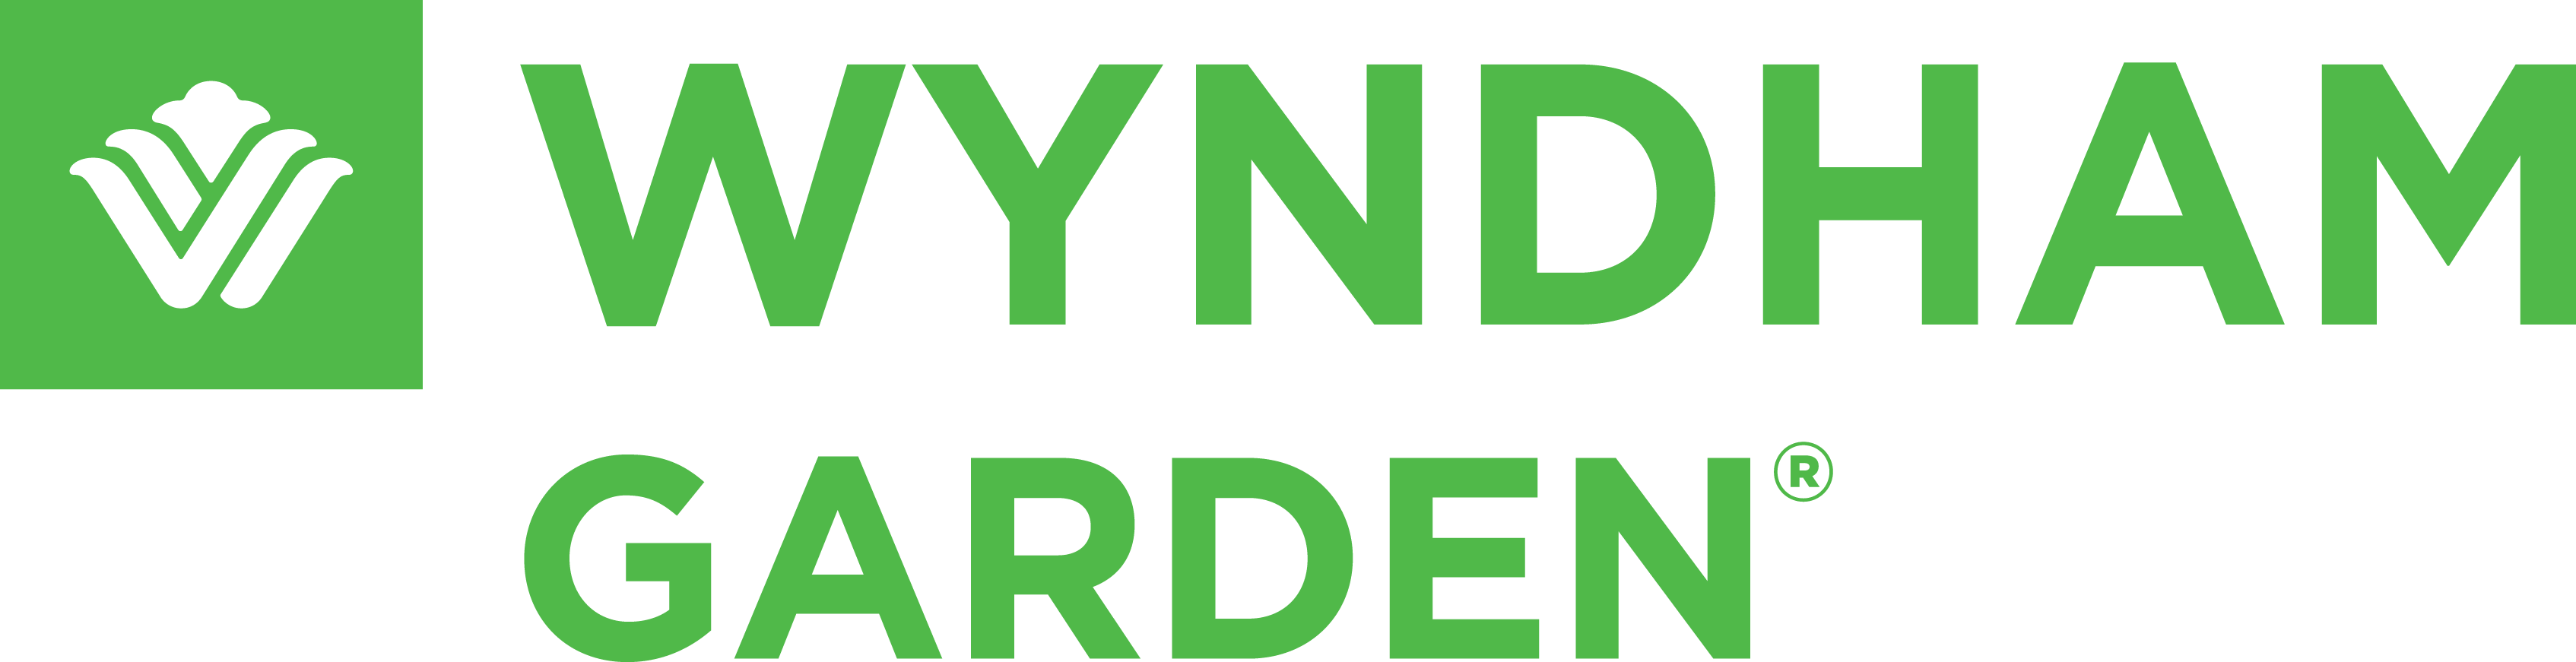 Wyndham Garden WHG Corporate